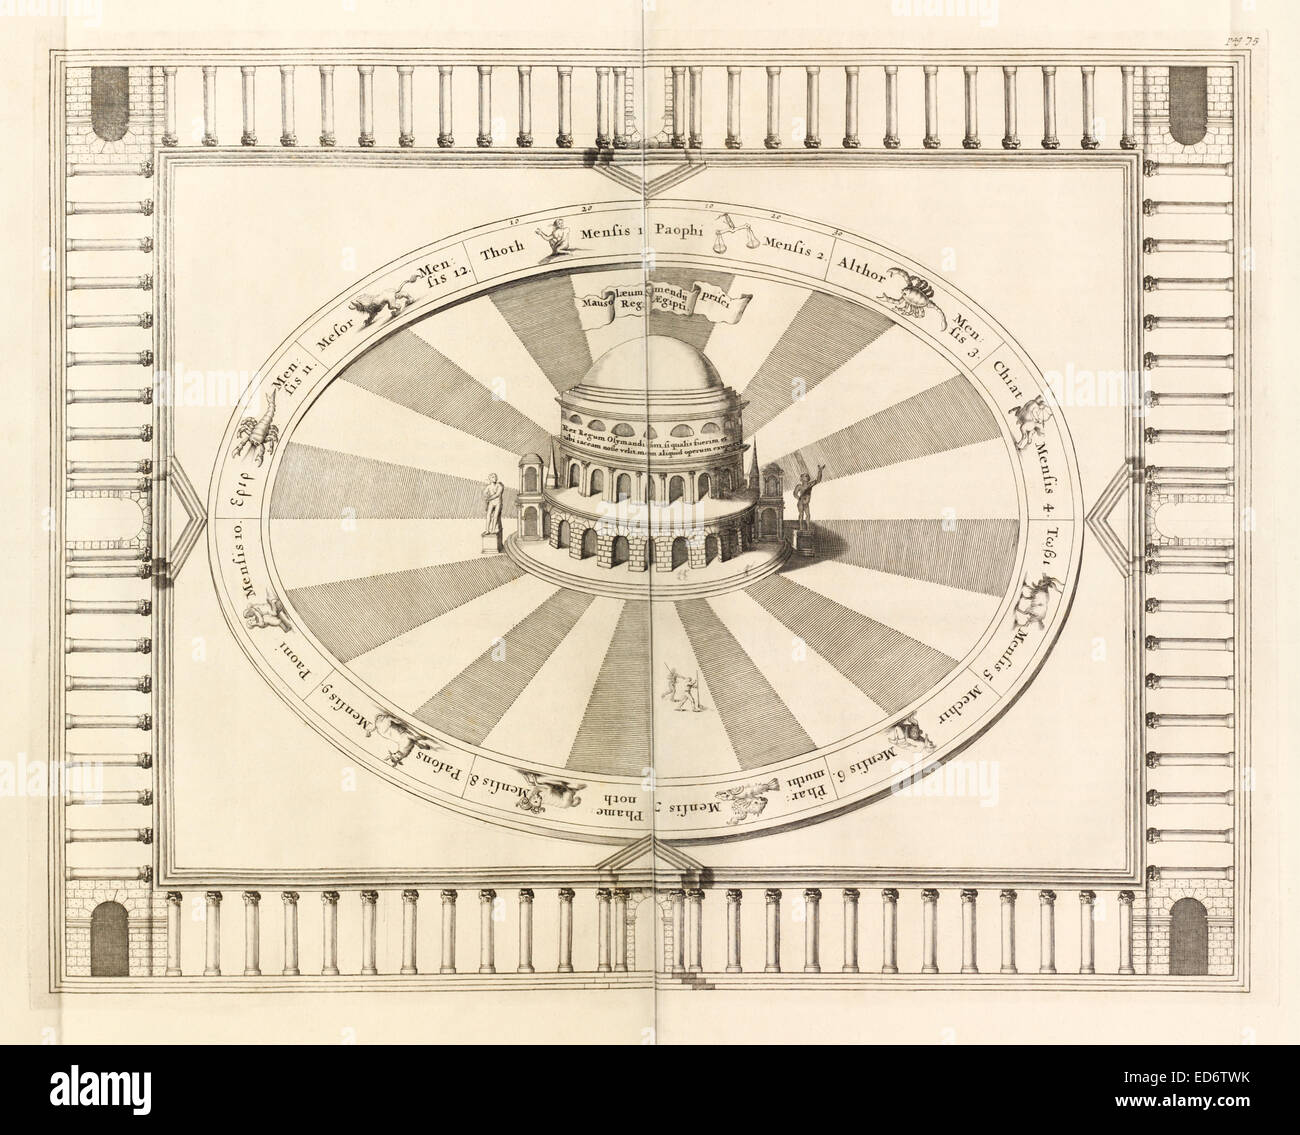 17ème siècle illustration du mausolée de Mendes. Voir la description pour plus d'informations. Banque D'Images